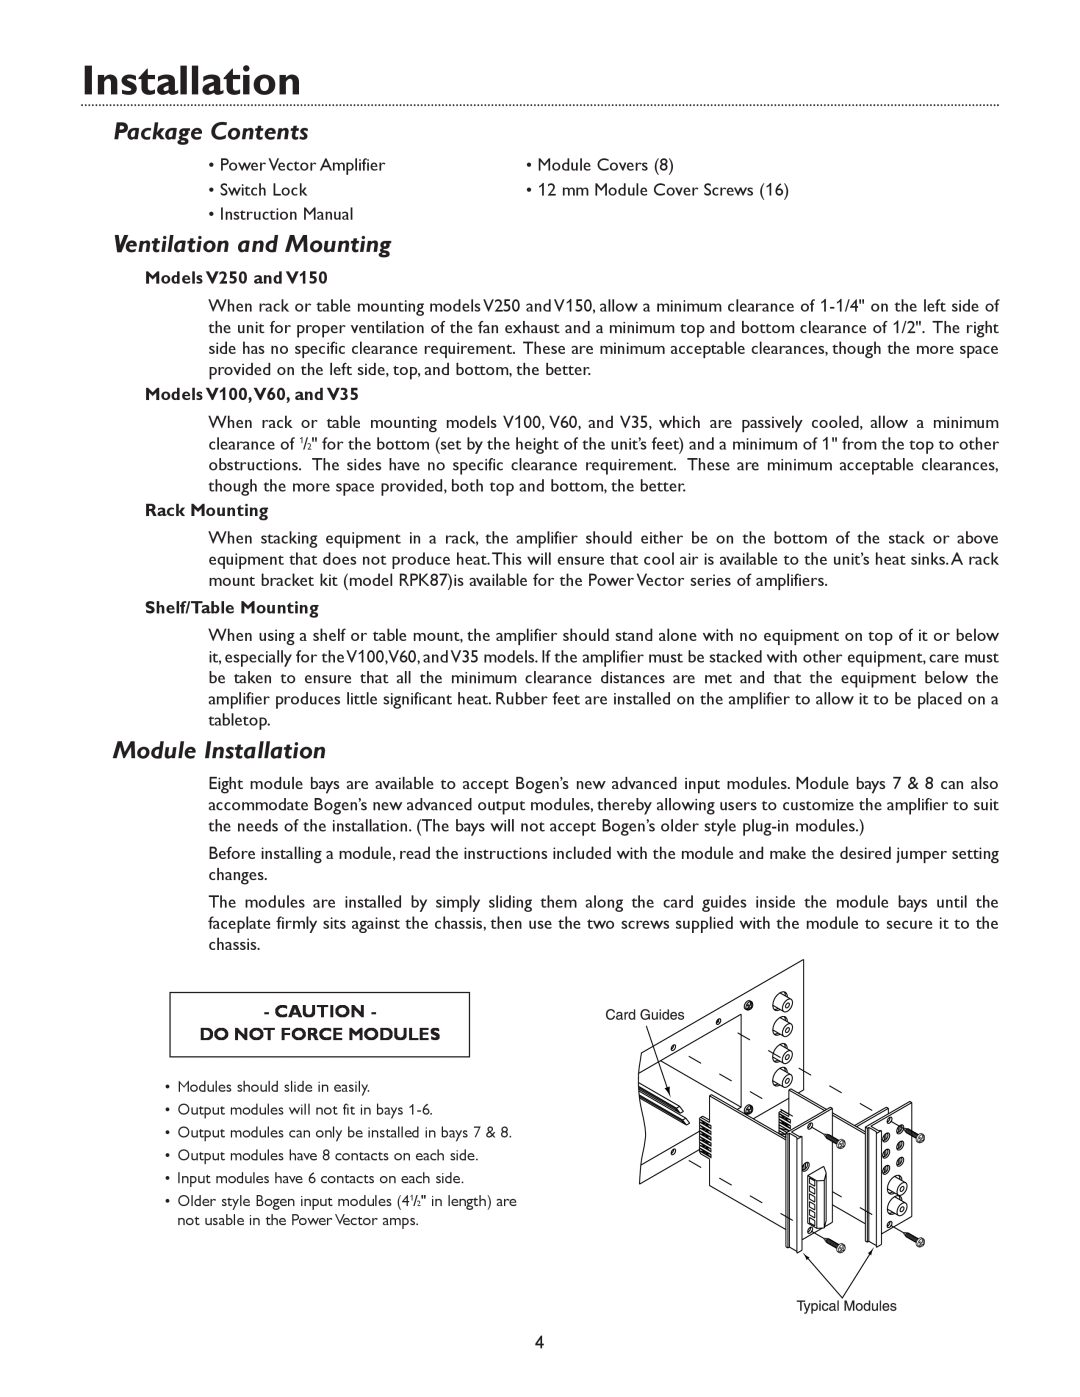 Bogen V35 Package Contents, Ventilation and Mounting, Module Installation, Models V250 and, Models V100,V60, and 